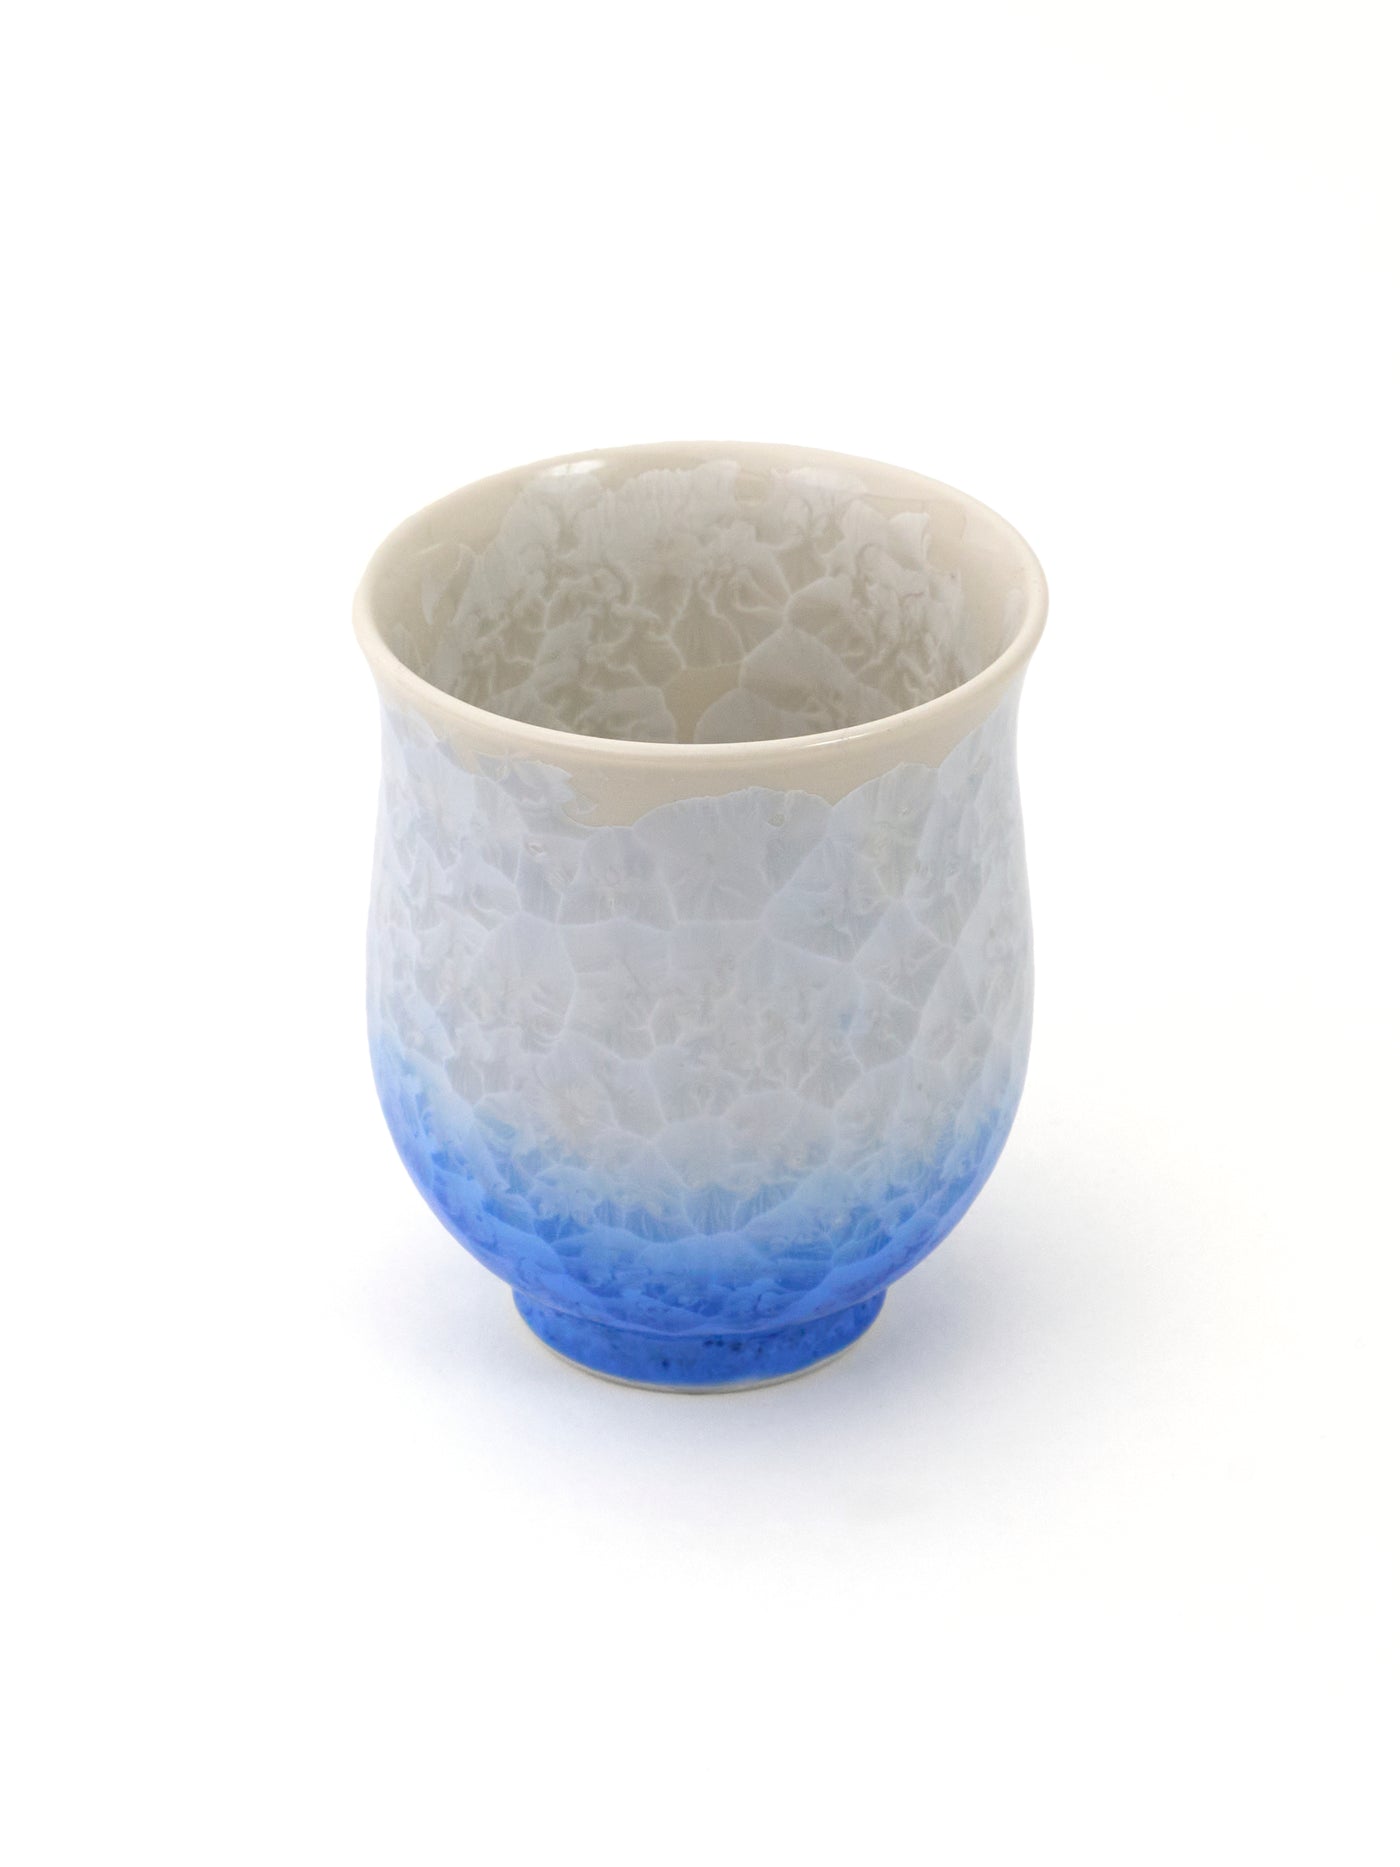 Ensemble de tasses à thé Cristal Bleu Yunomi Kyoto de Kitaya (7fl.oz/200ml)